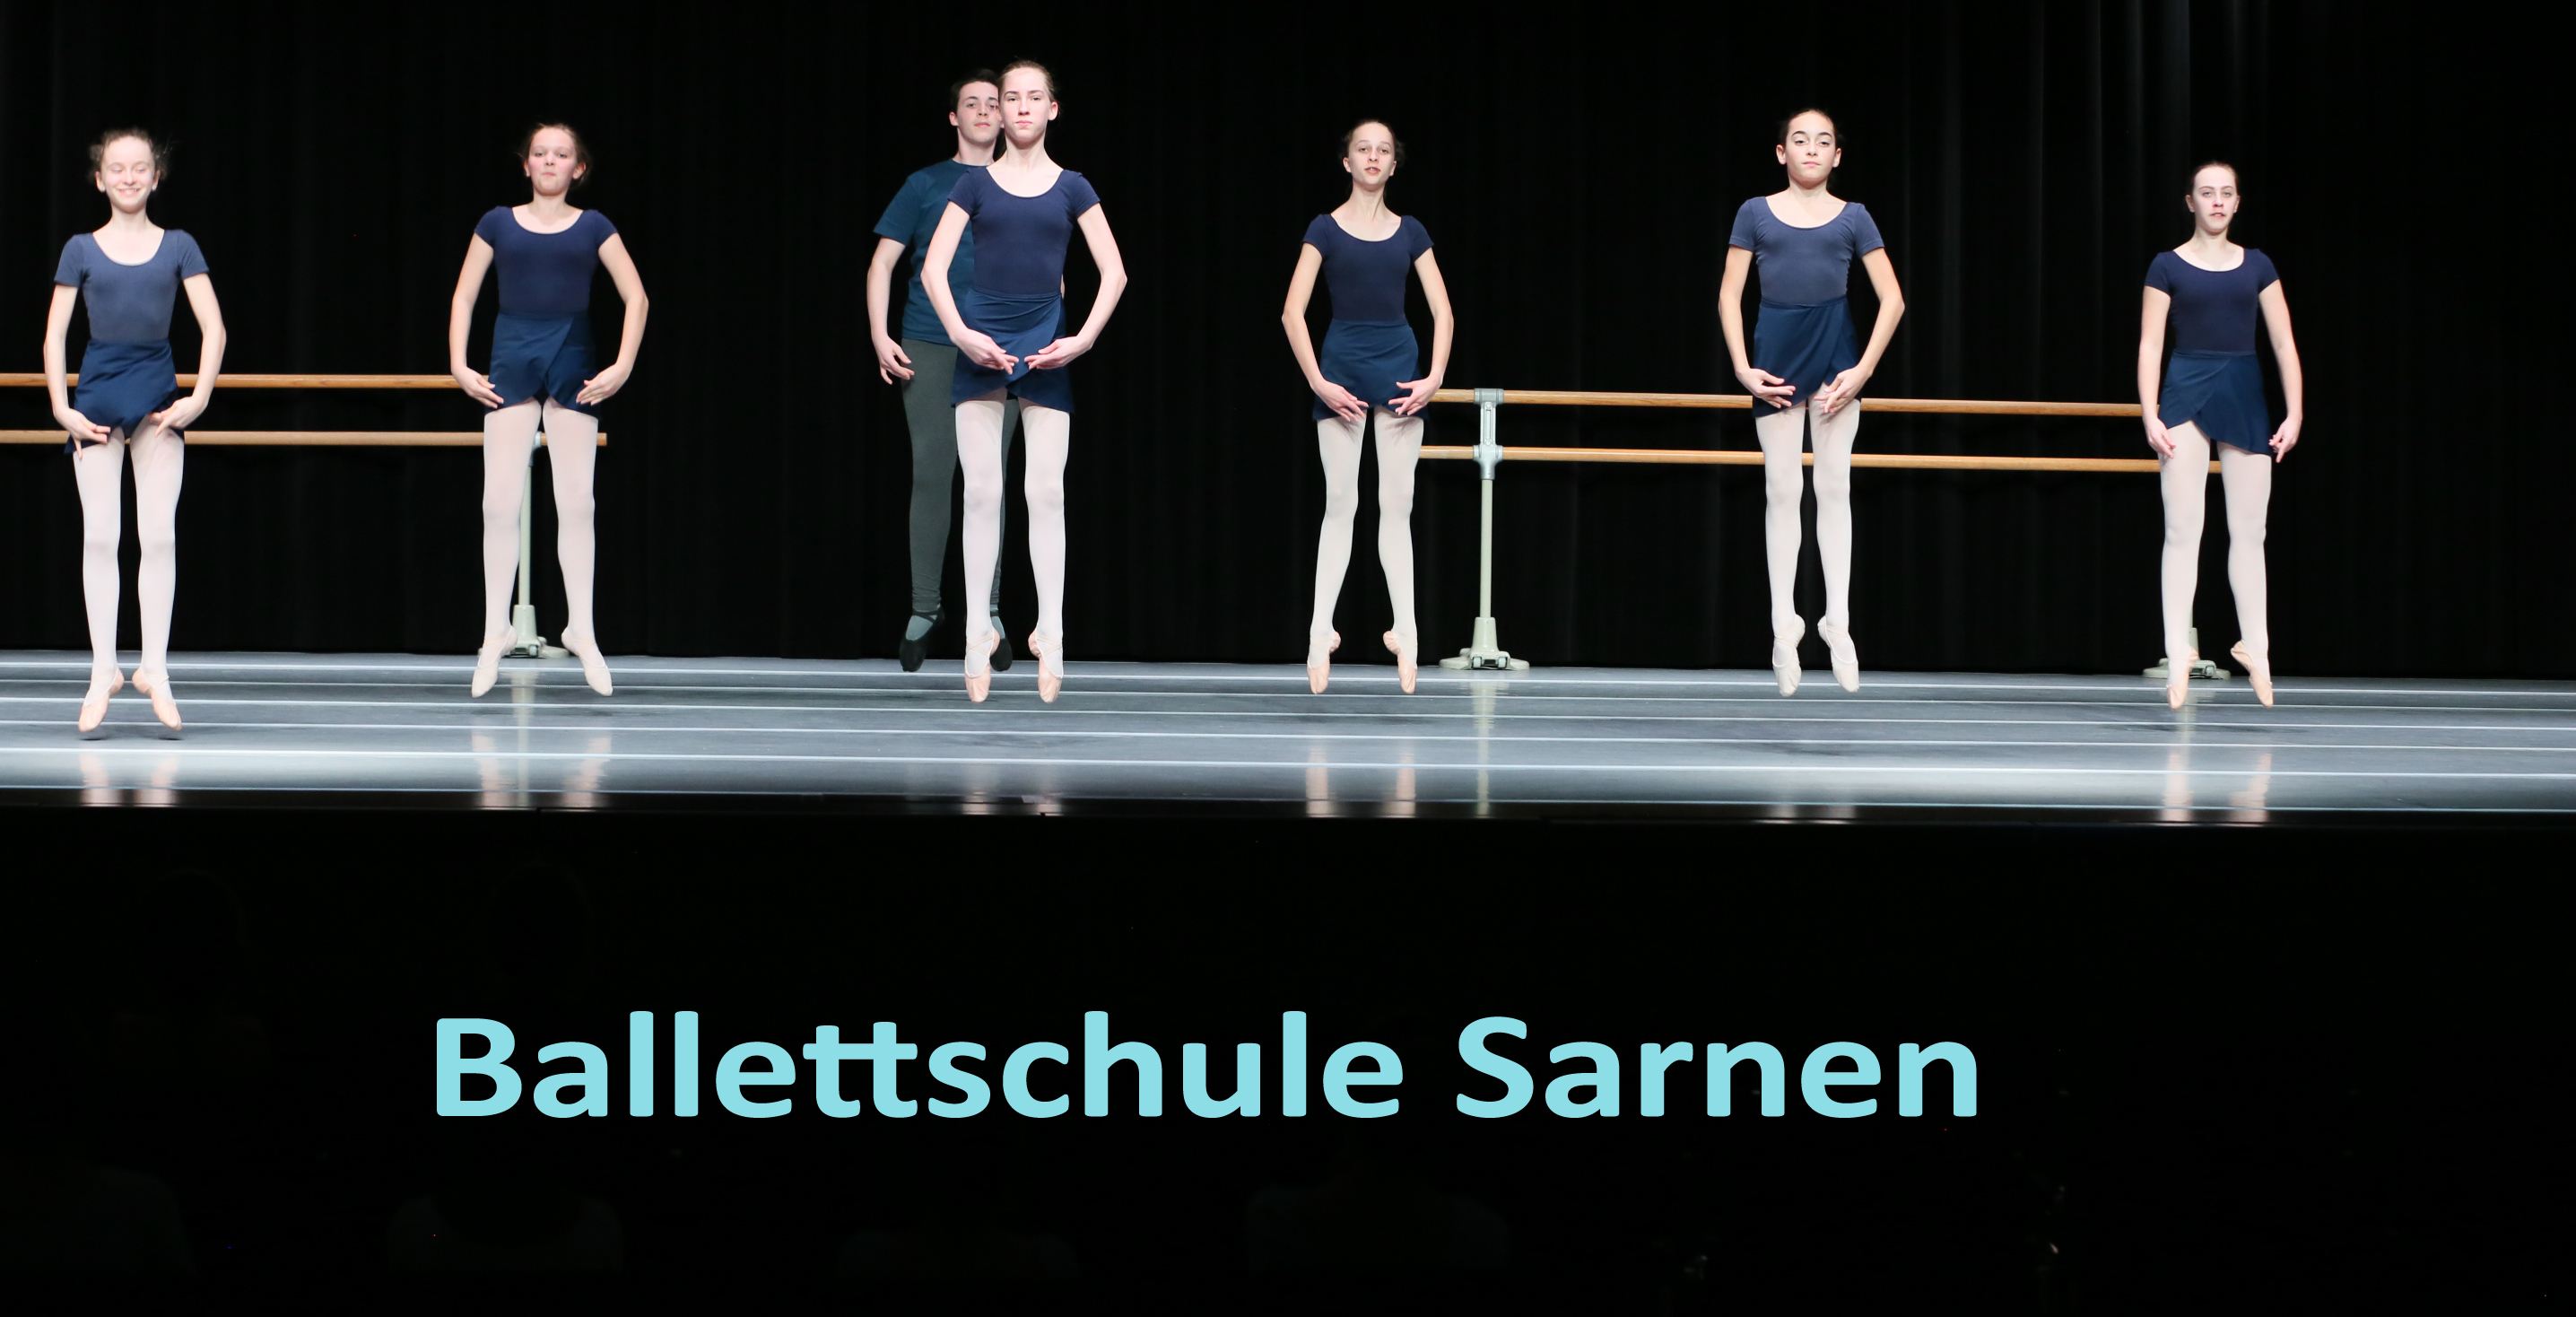 Ballettschule Sarnen, Stundenplan